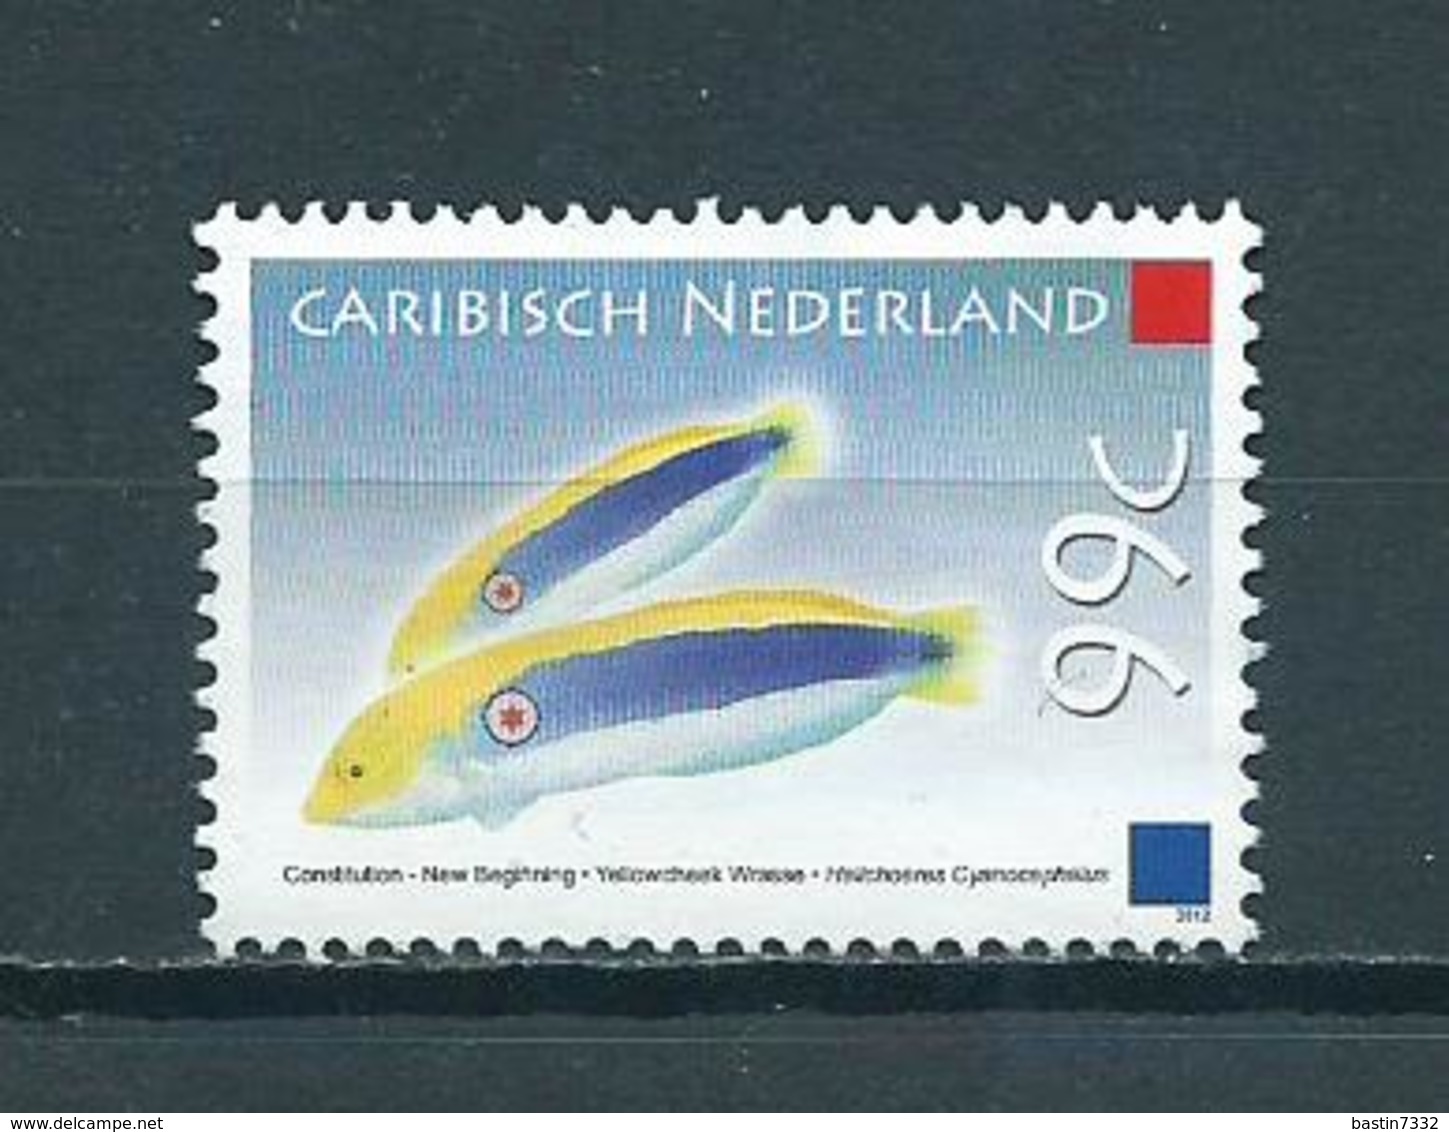 2012 Caribisch Nederland 99 Cent Fish,poisson,vissen No Gum/without Gum/sans Gomme - Curaçao, Nederlandse Antillen, Aruba